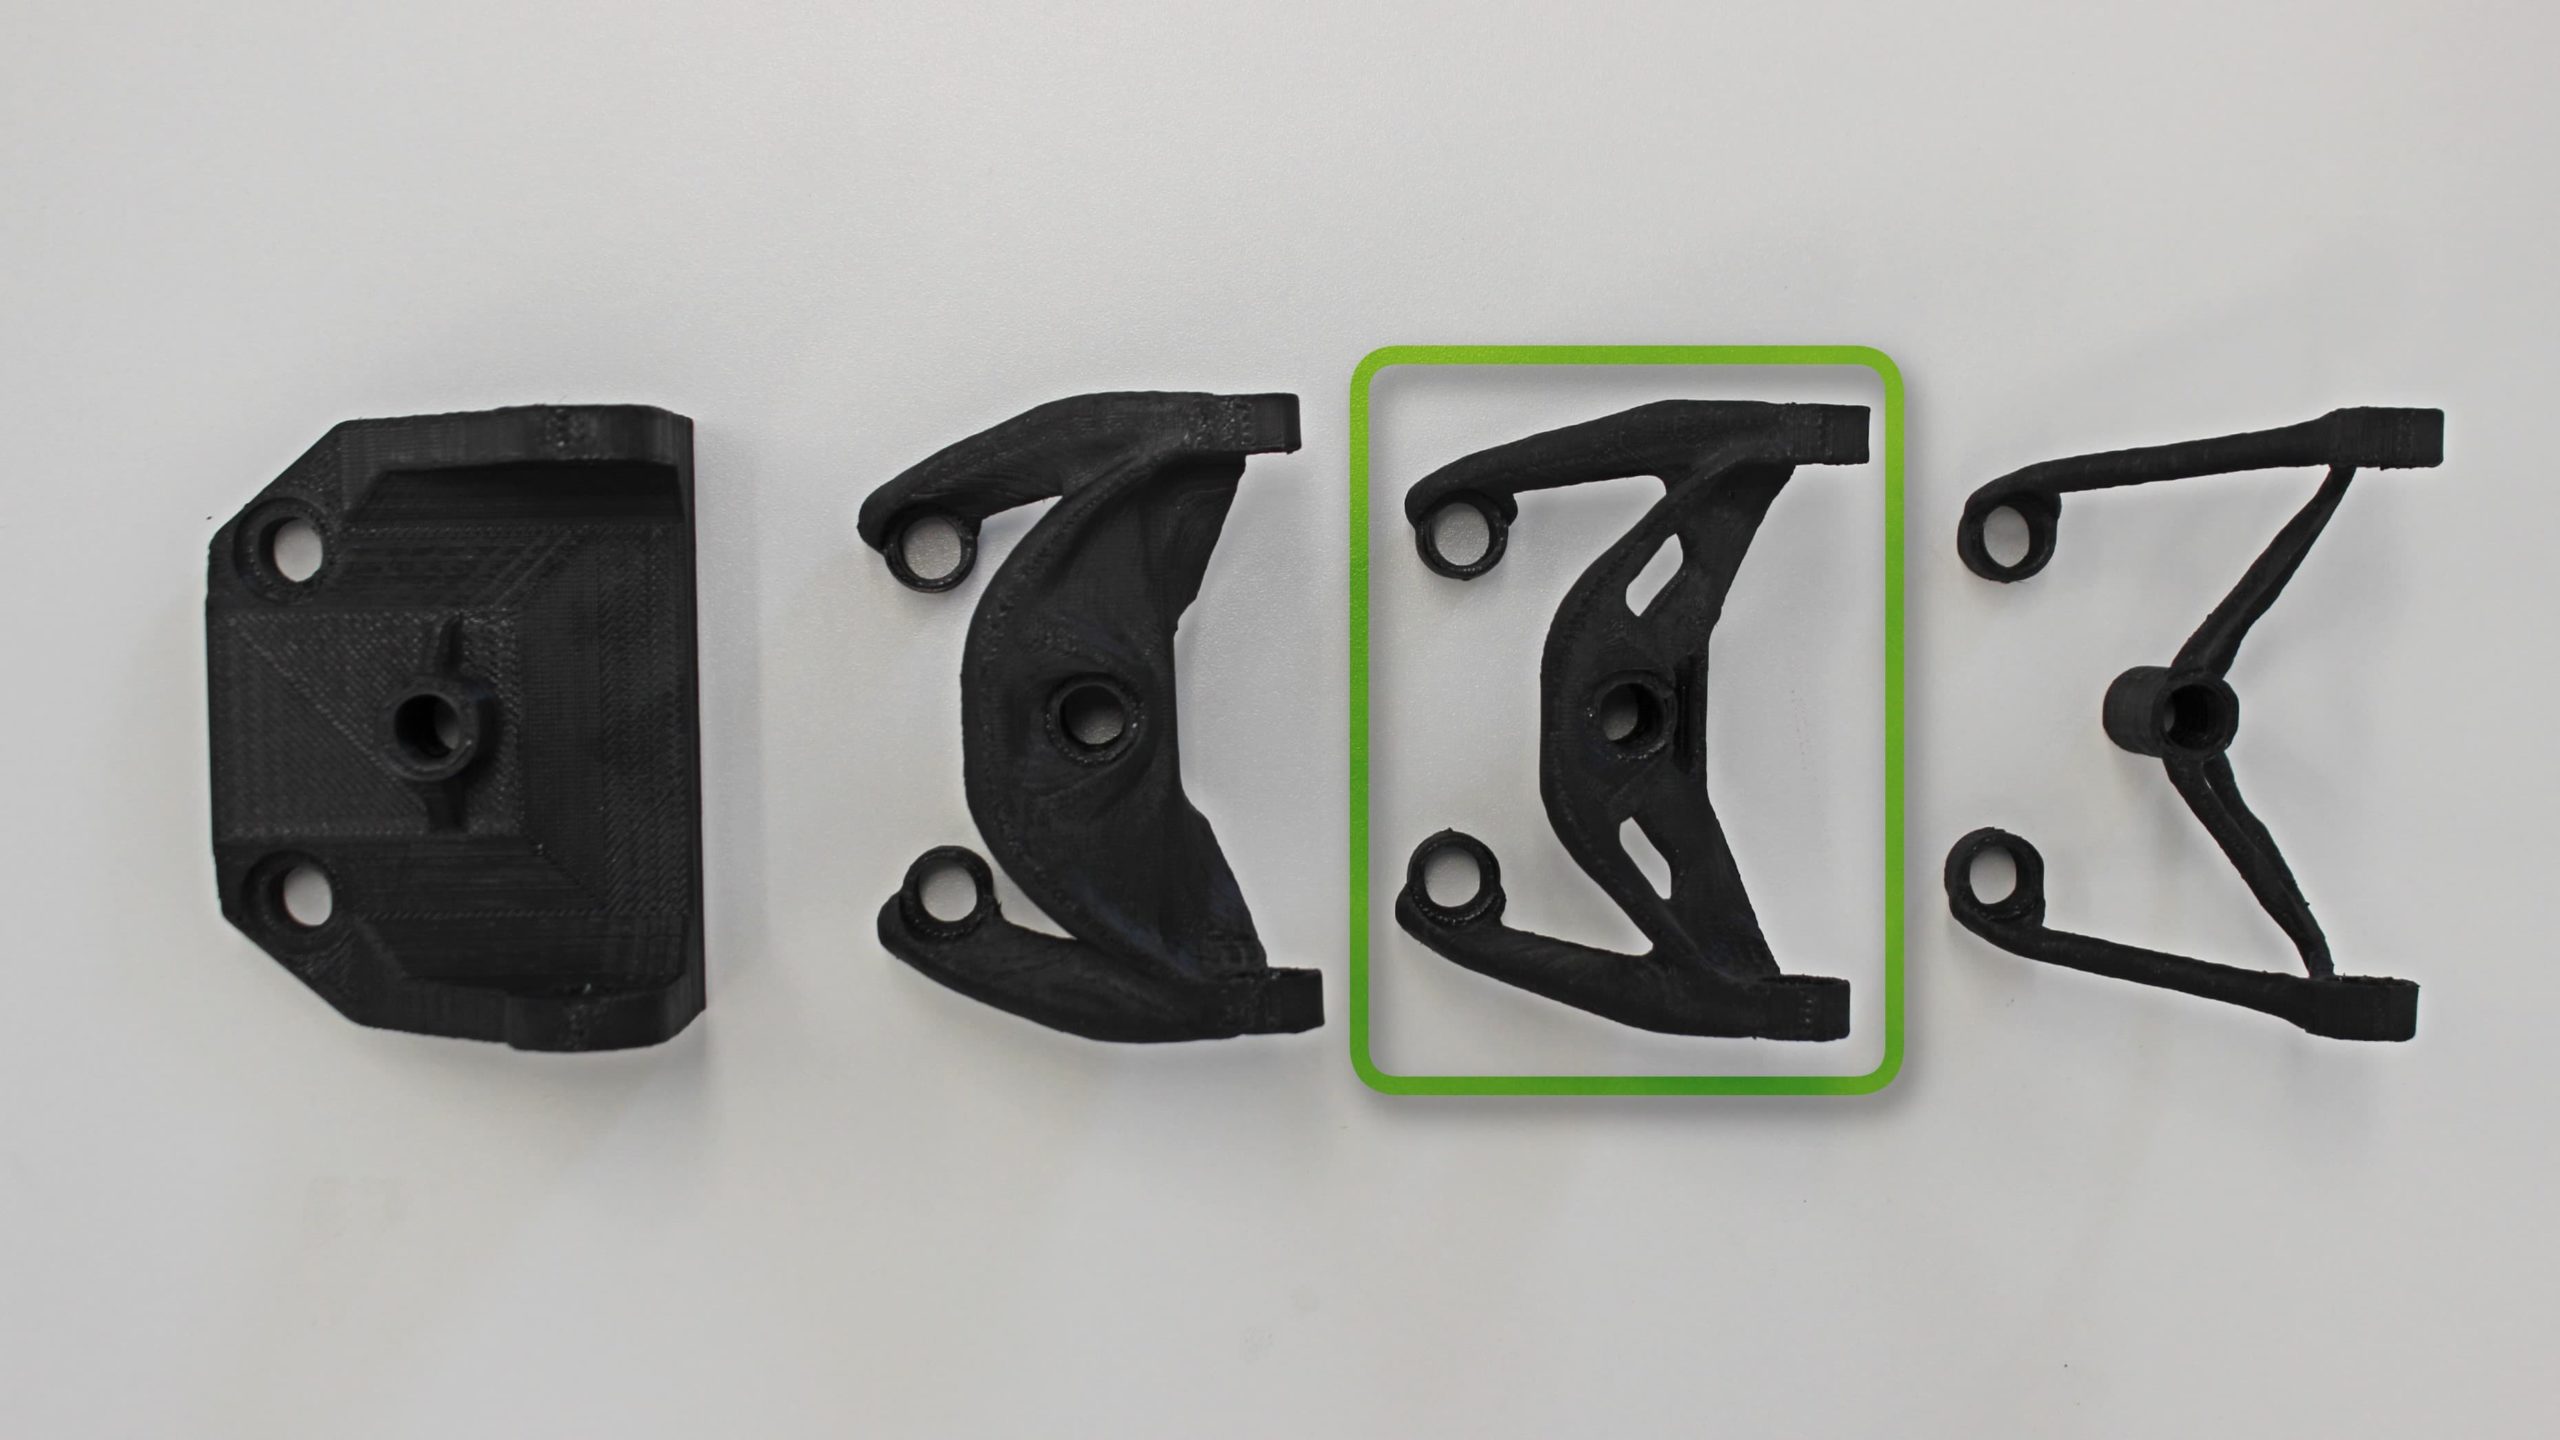 Diseño y fabricación por impresión 3D para reducir peso de componentes